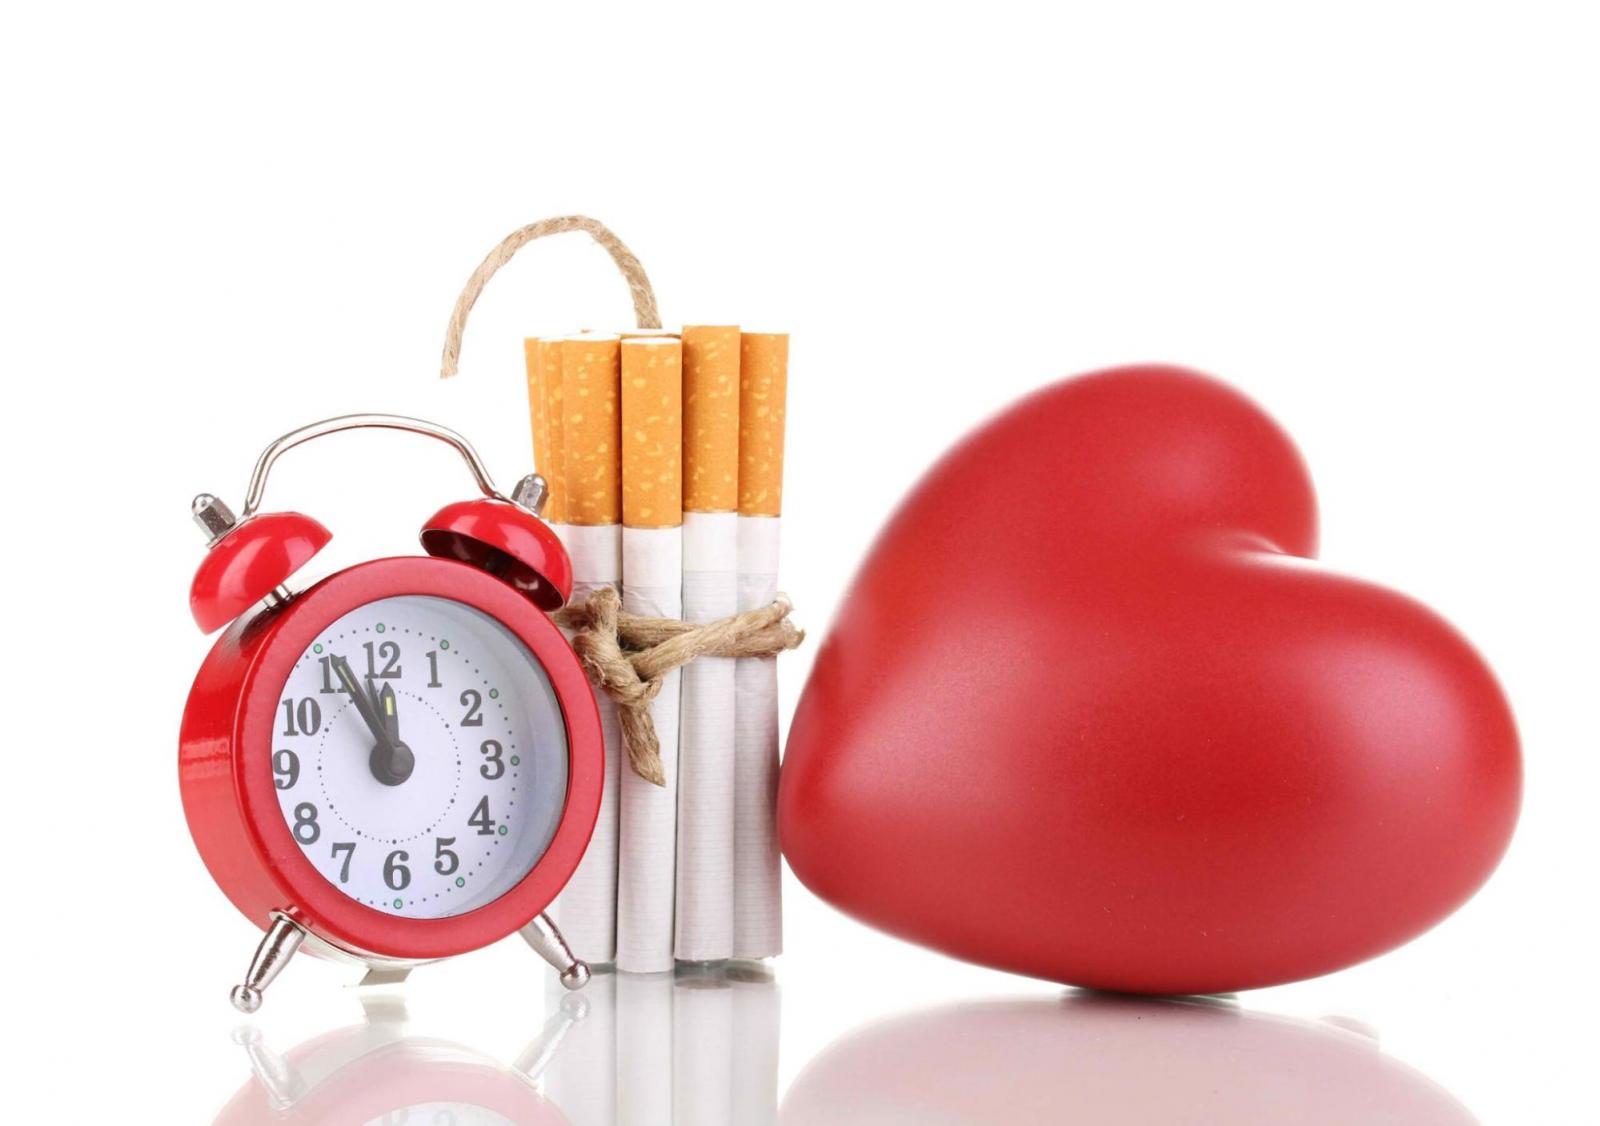 Báo động! Nguy cơ tử vong ở người mắc bệnh mạch vành tăng tới 70% do hút thuốc lá